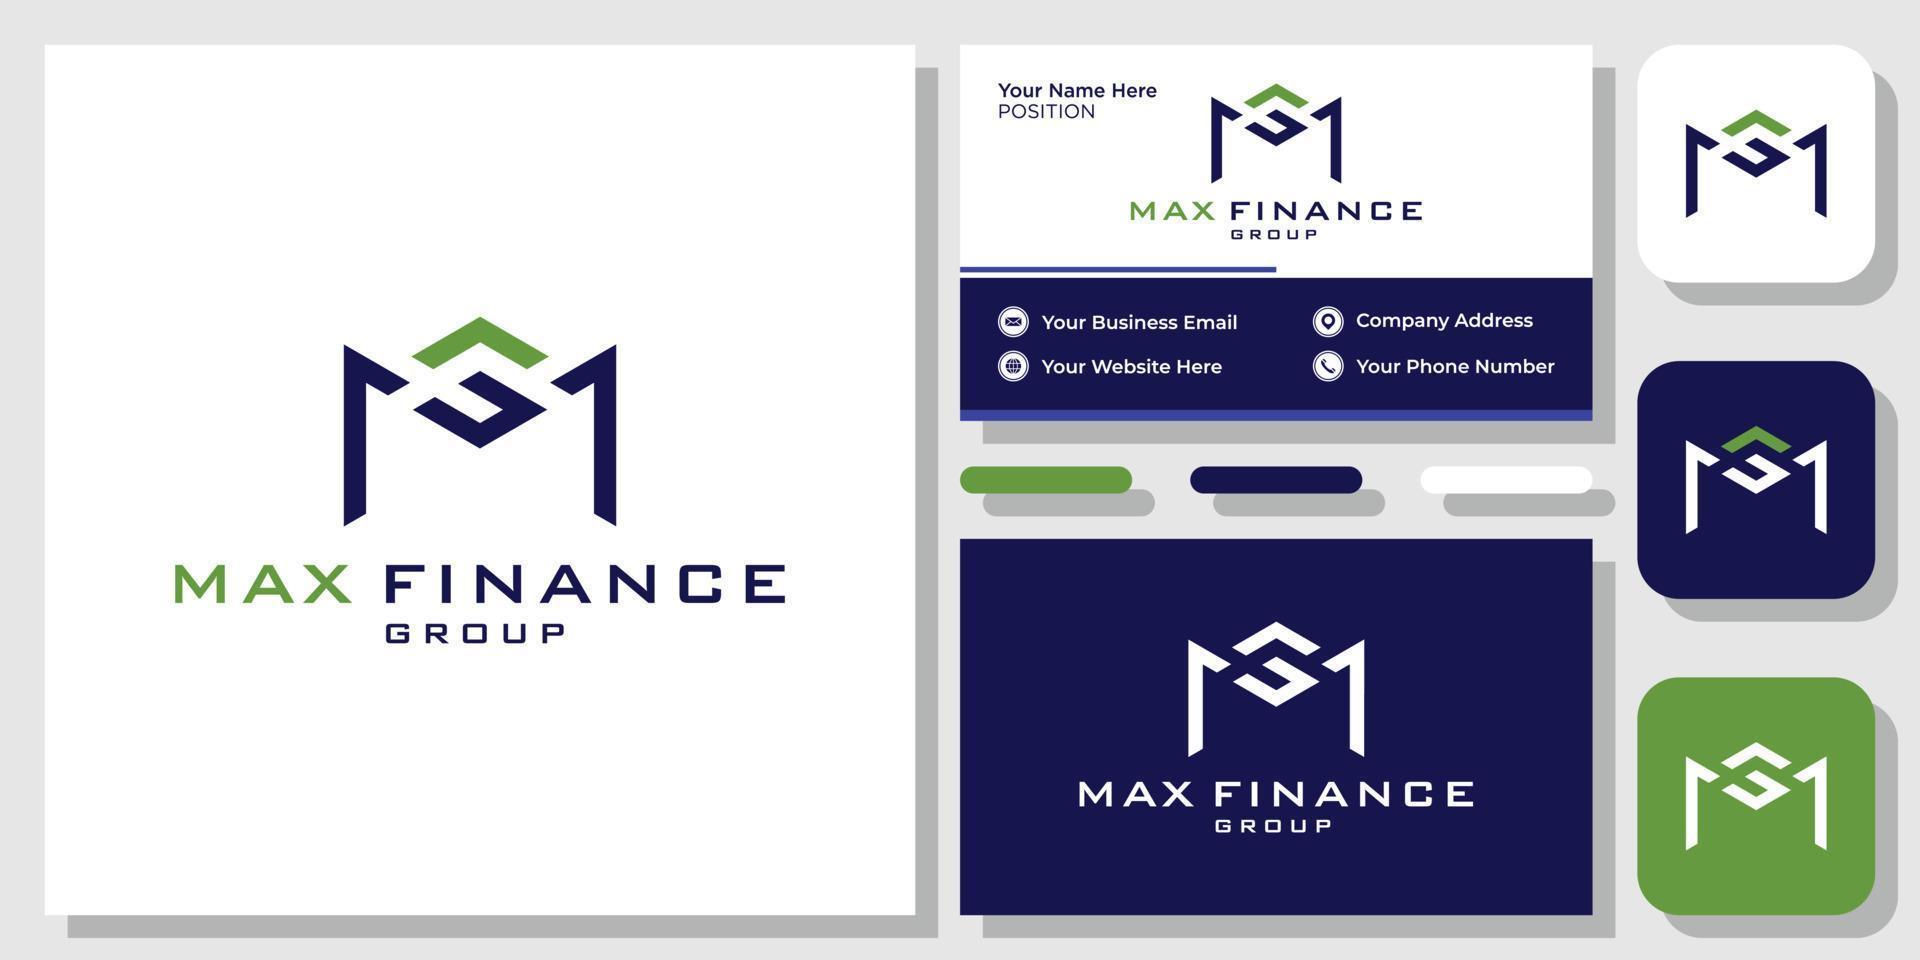 Max Finance Group iniciales letras crecimiento verde gráfico positivo con plantilla de tarjeta de visita vector